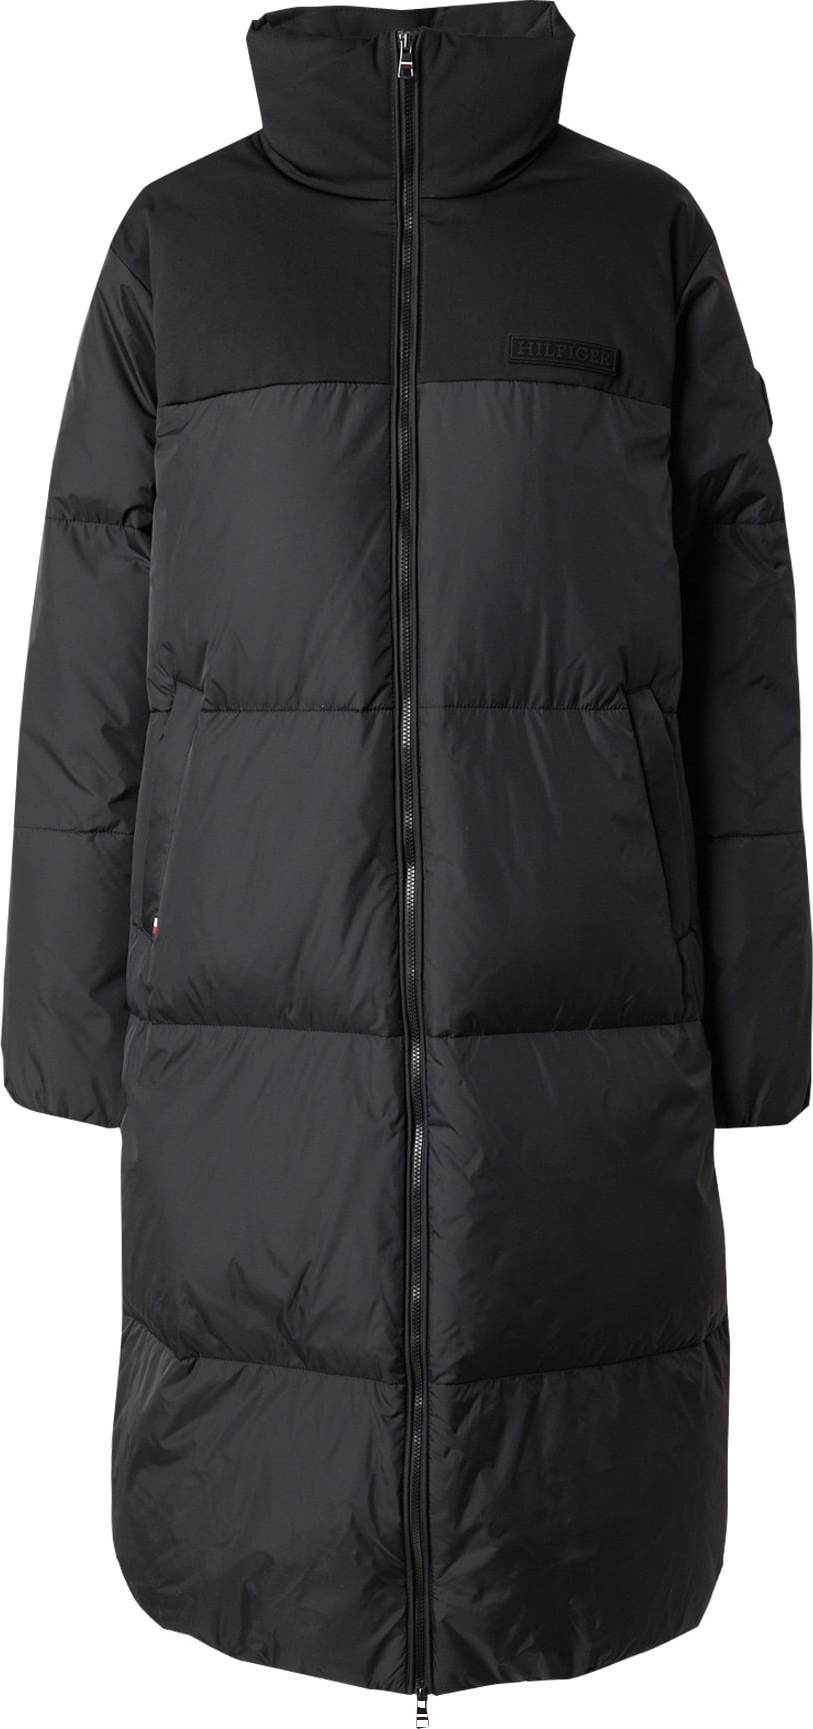 Zimní kabát 'New York' Tommy Hilfiger antracitová / černá